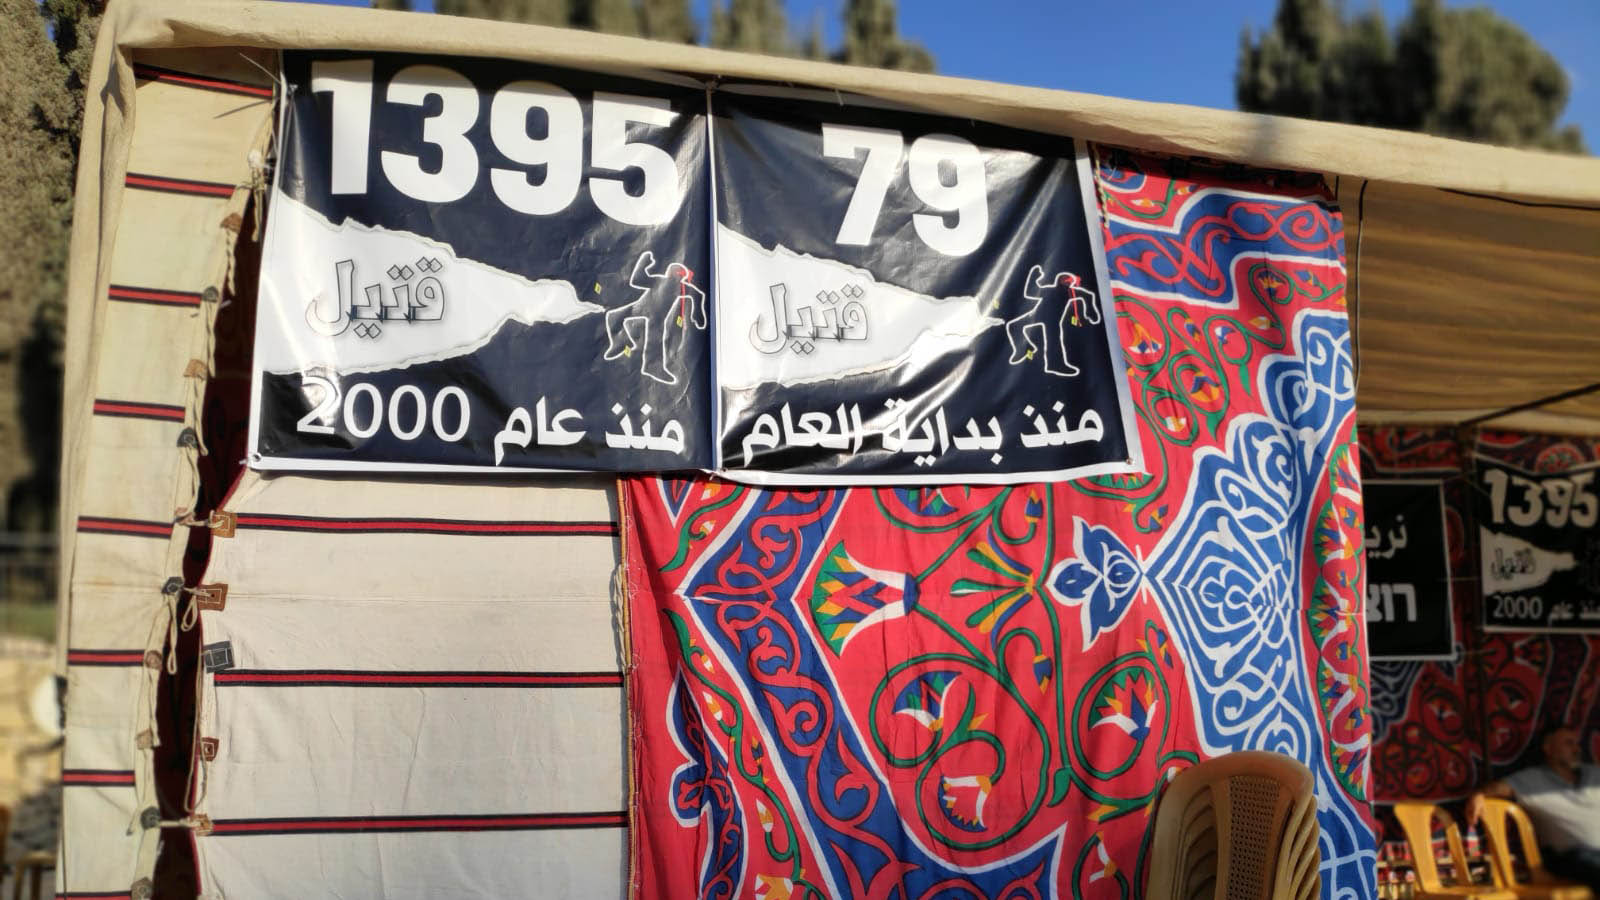 אוהל המחאה בירושלים, 3 בנובמבר 2019 (צילום: דוד טברסקי)